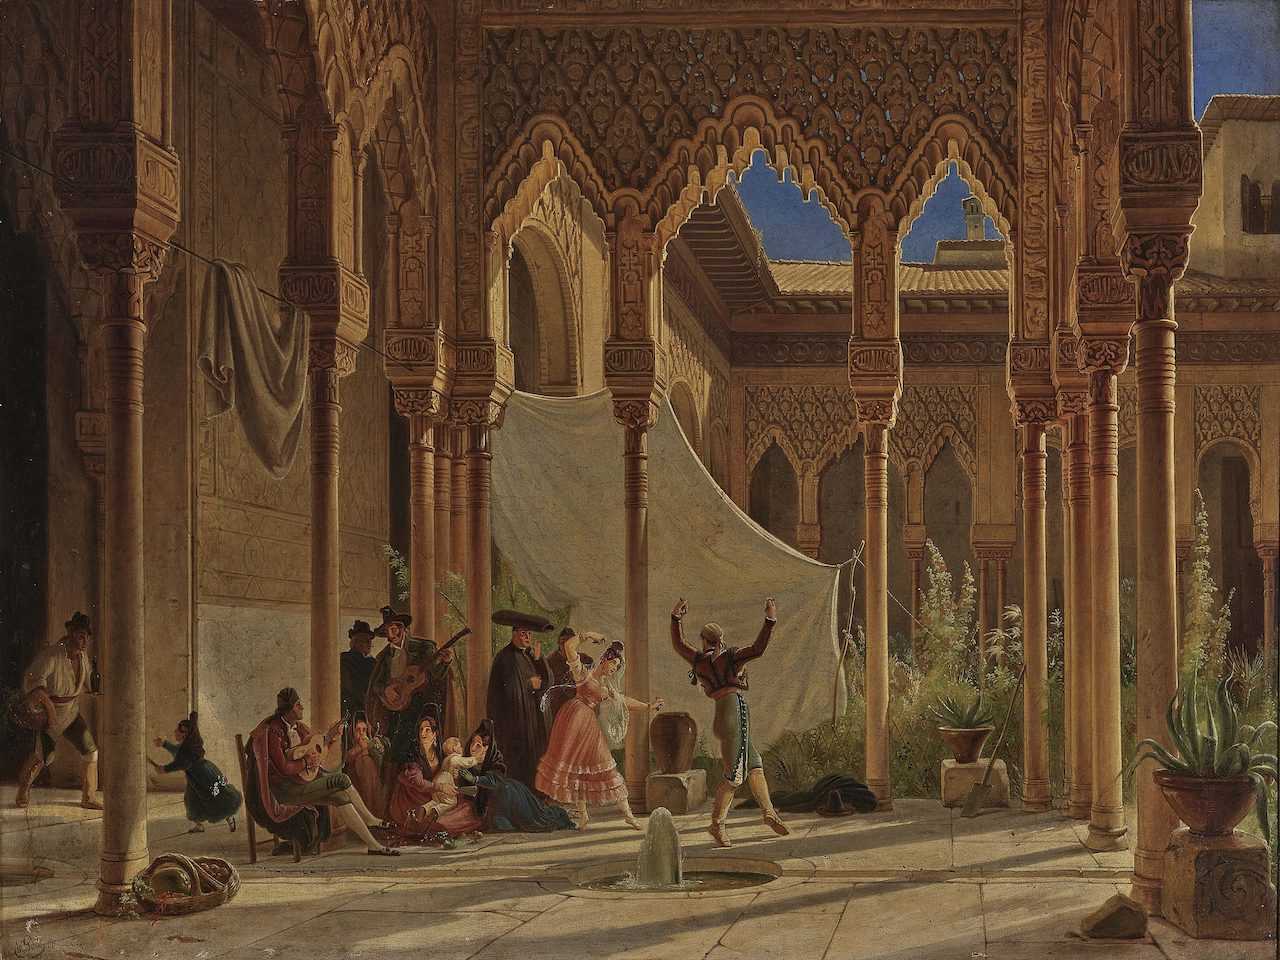 Gemälde Wilhelm Gail "Tanz im Löwenhof der Alhambra in Granada", 1837